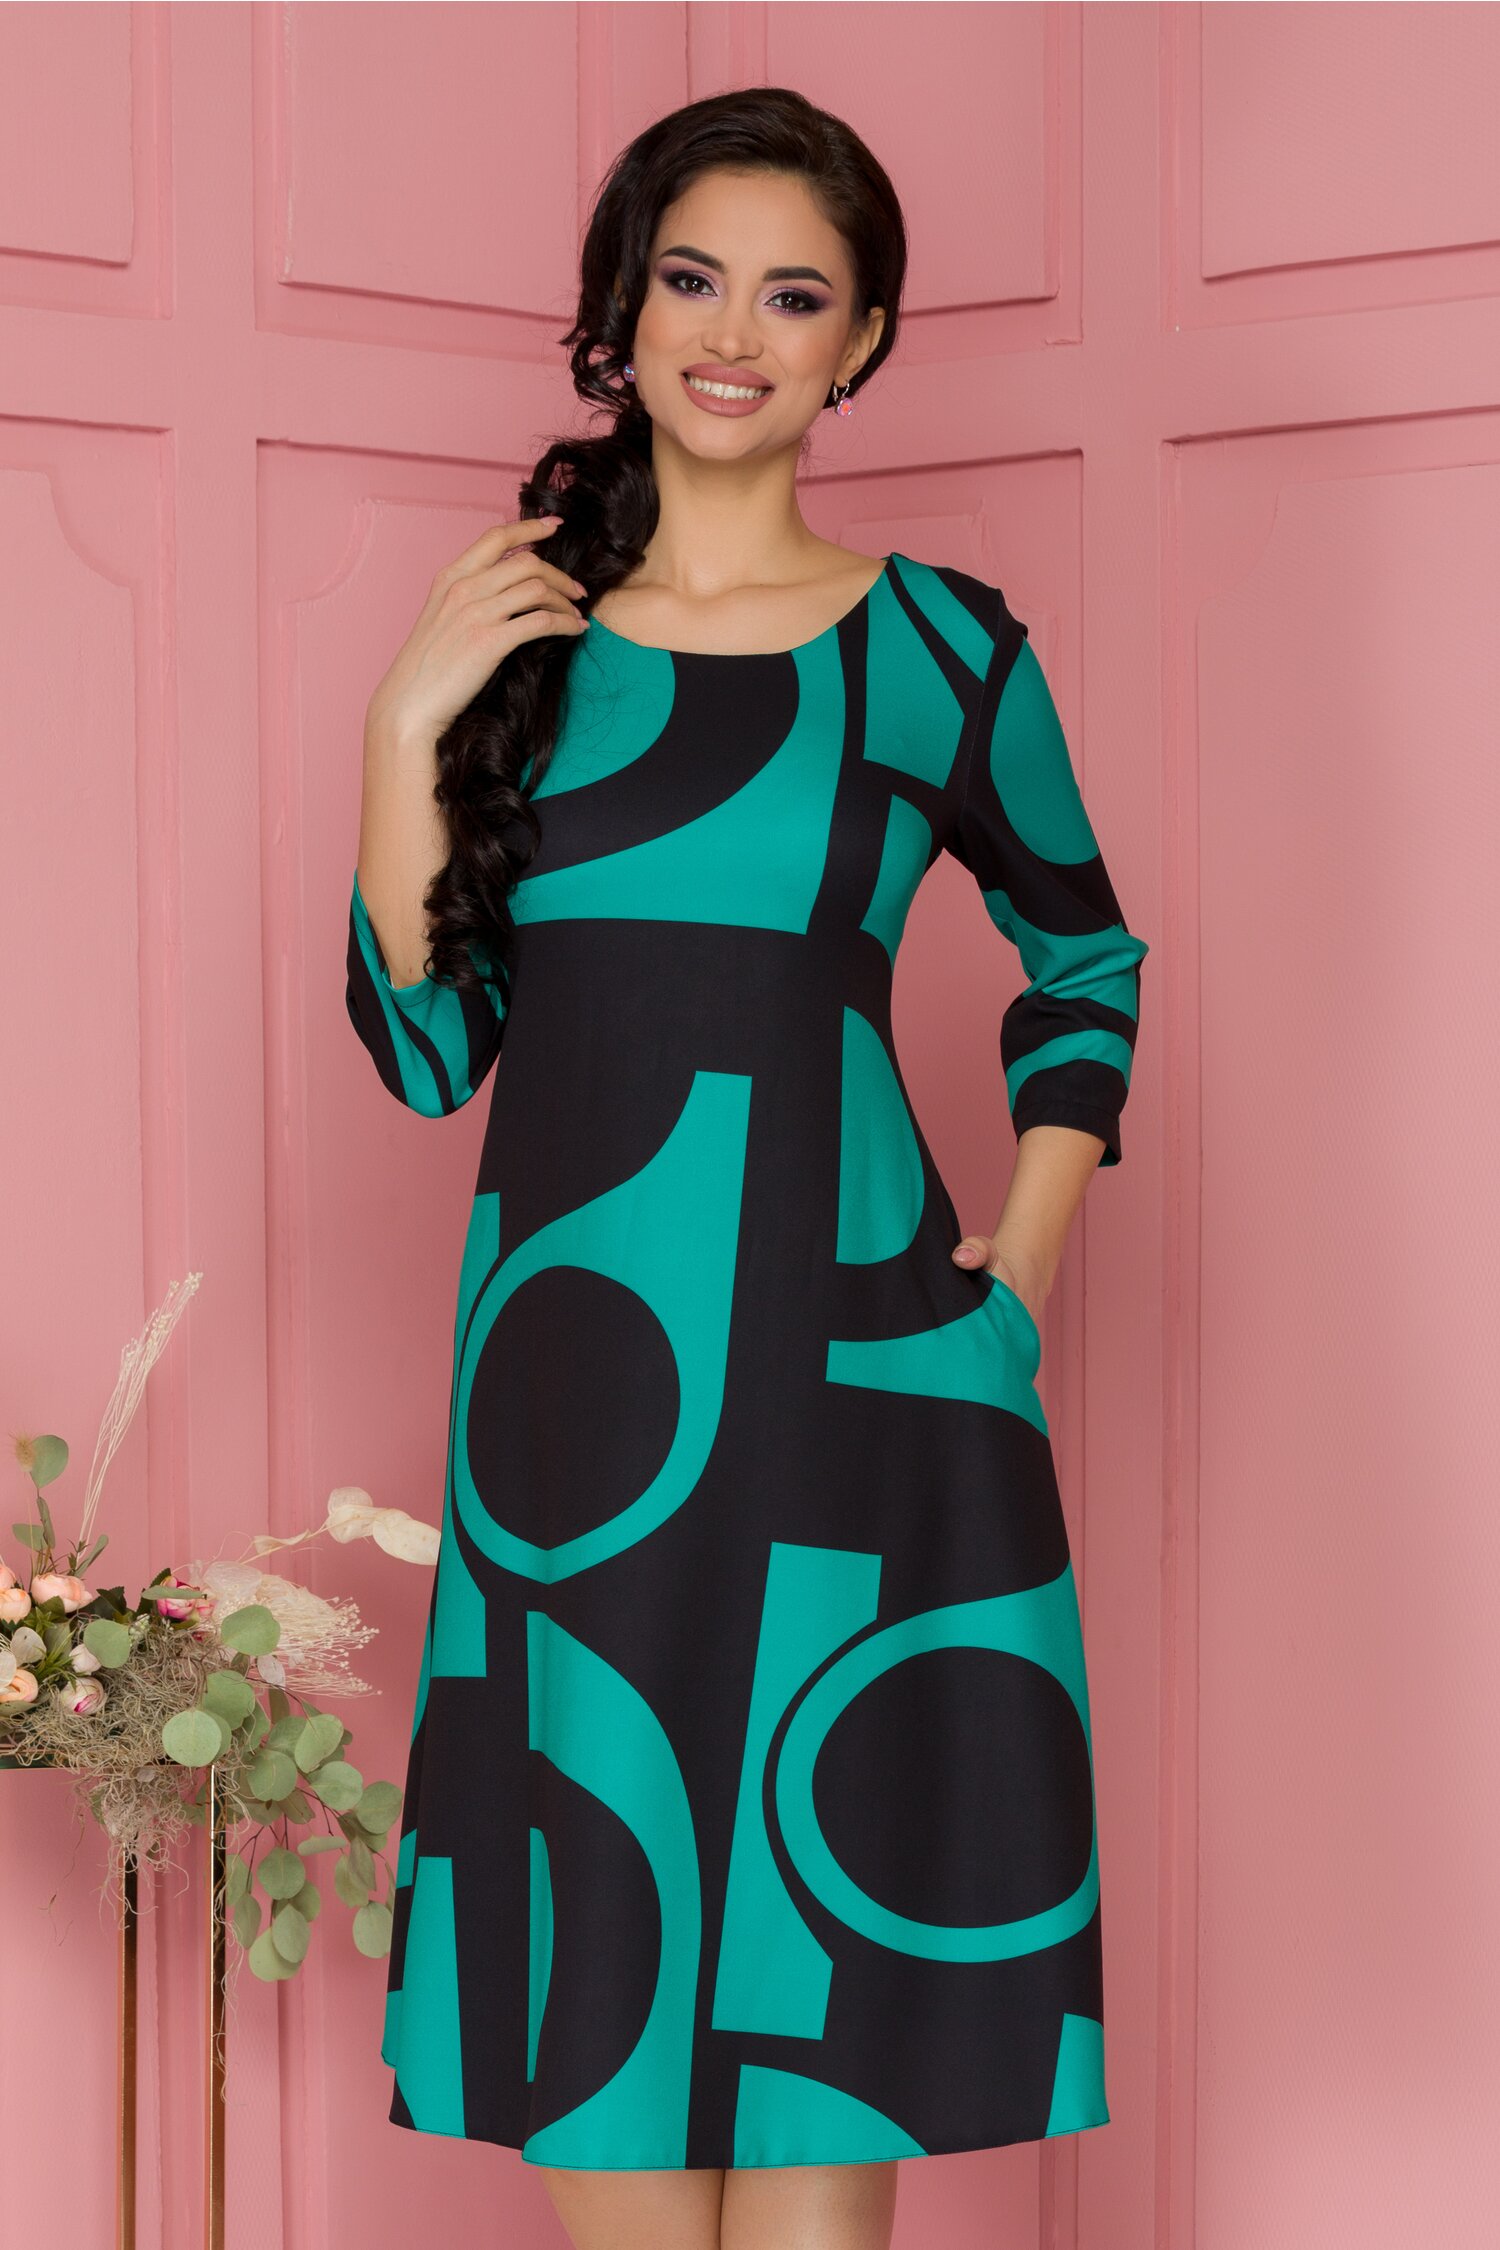 Rochie Samira verde cu imprimeuri geometrice negre